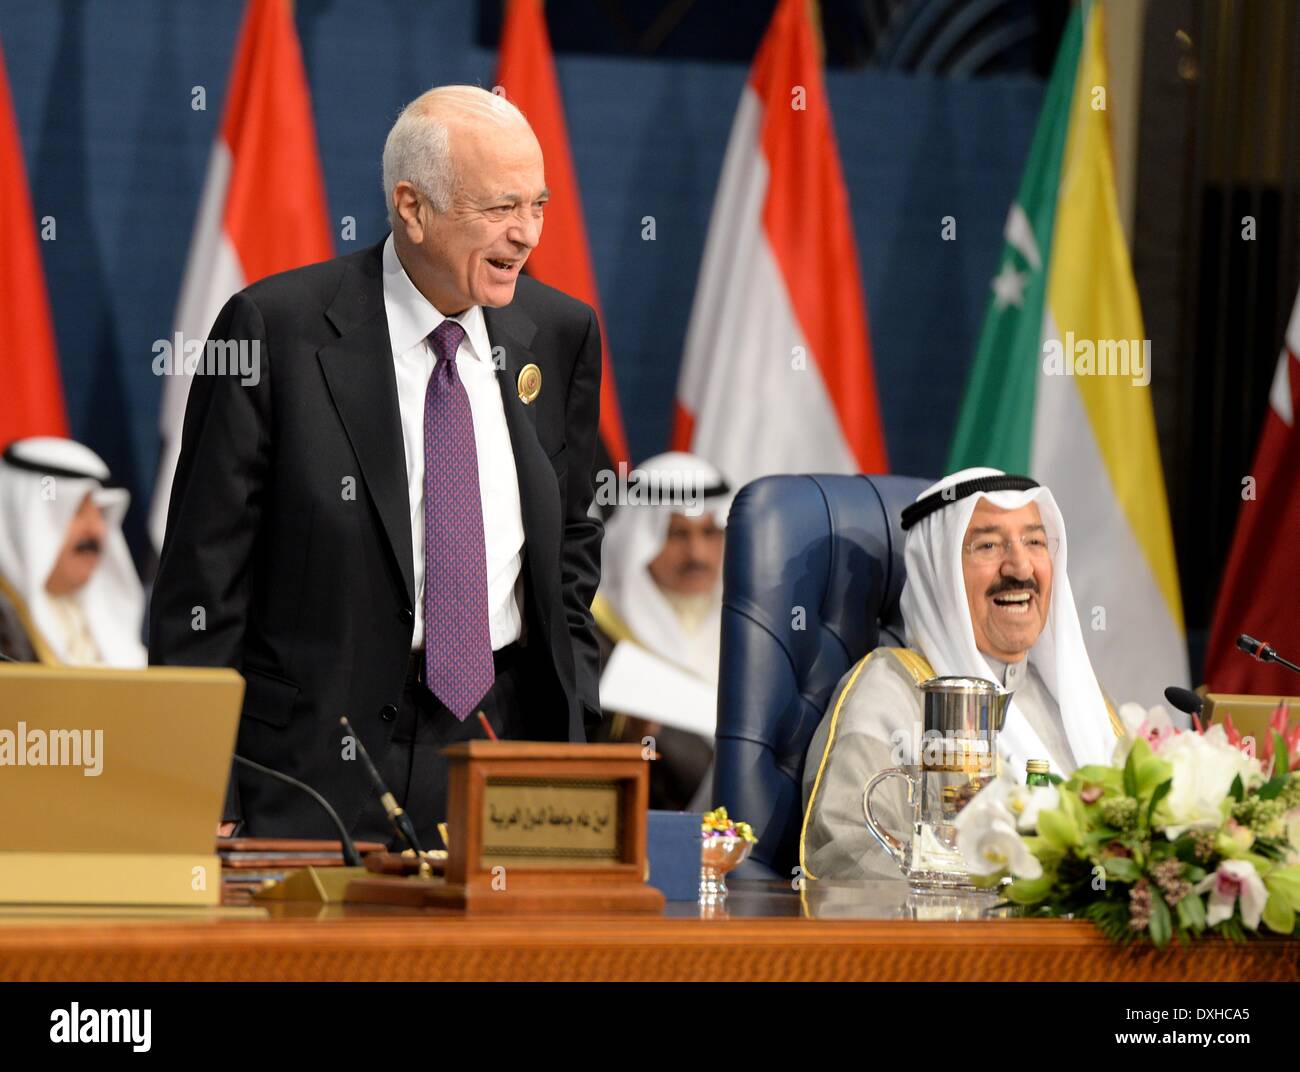 La ville de Koweït, Koweït. Mar 26, 2014. Secrétaire général de la Ligue des États arabes (LEA) Nabil Elaraby (L) et de l'Emir du Koweït, cheikh Sabah al-Ahmad al-Jaber al-Sabah assister à la 25e session de clôture du Sommet de la Ligue arabe dans la ville de Koweït, Koweït, le 26 mars 2014. Credit : Noufal Ibrahim/Xinhua/Alamy Live News Banque D'Images